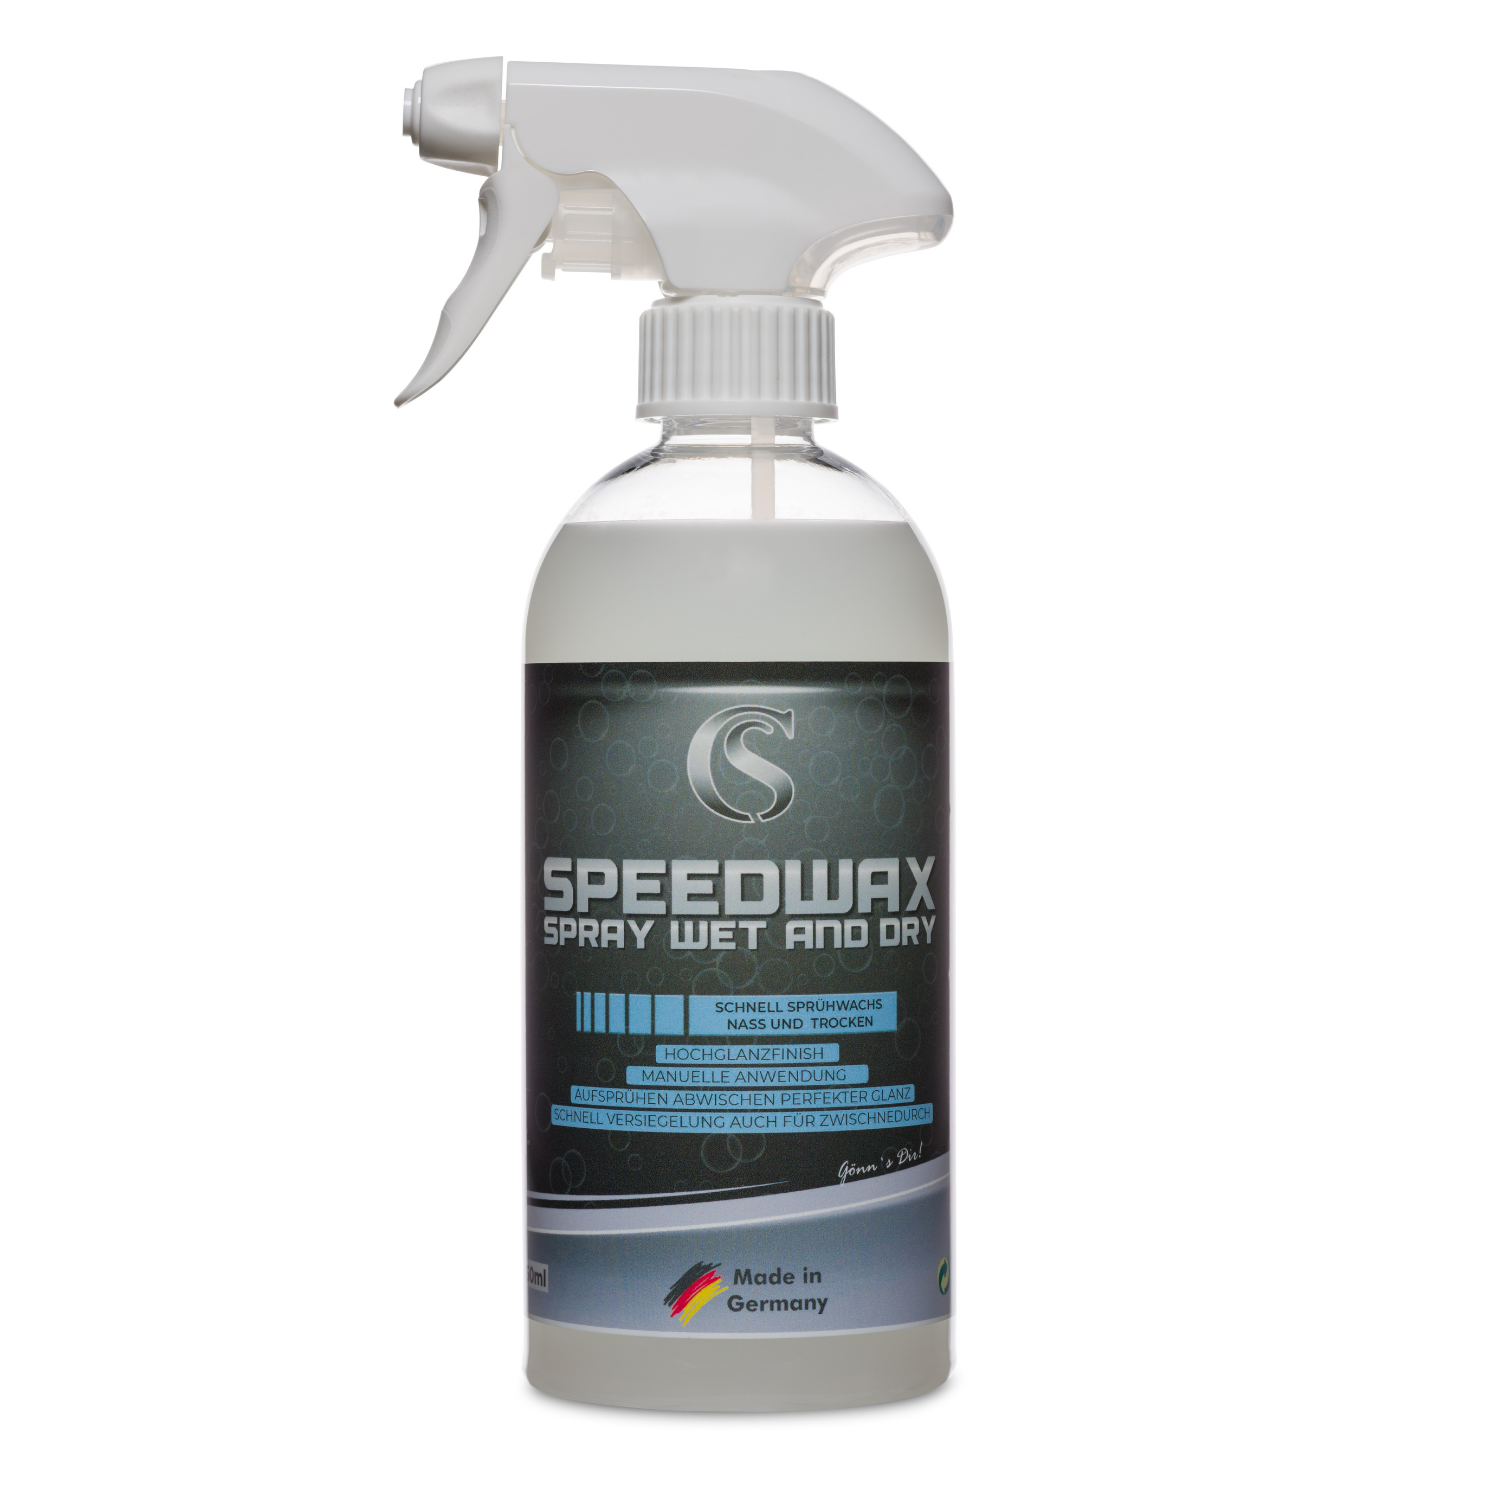 Car Sense Speedwax Spray Wet and Dry Schnellsprühwachs für Tiefenglanz - Schutz vor Witterungseinflüssen - Einfache Anwendung, hochglanzfinish